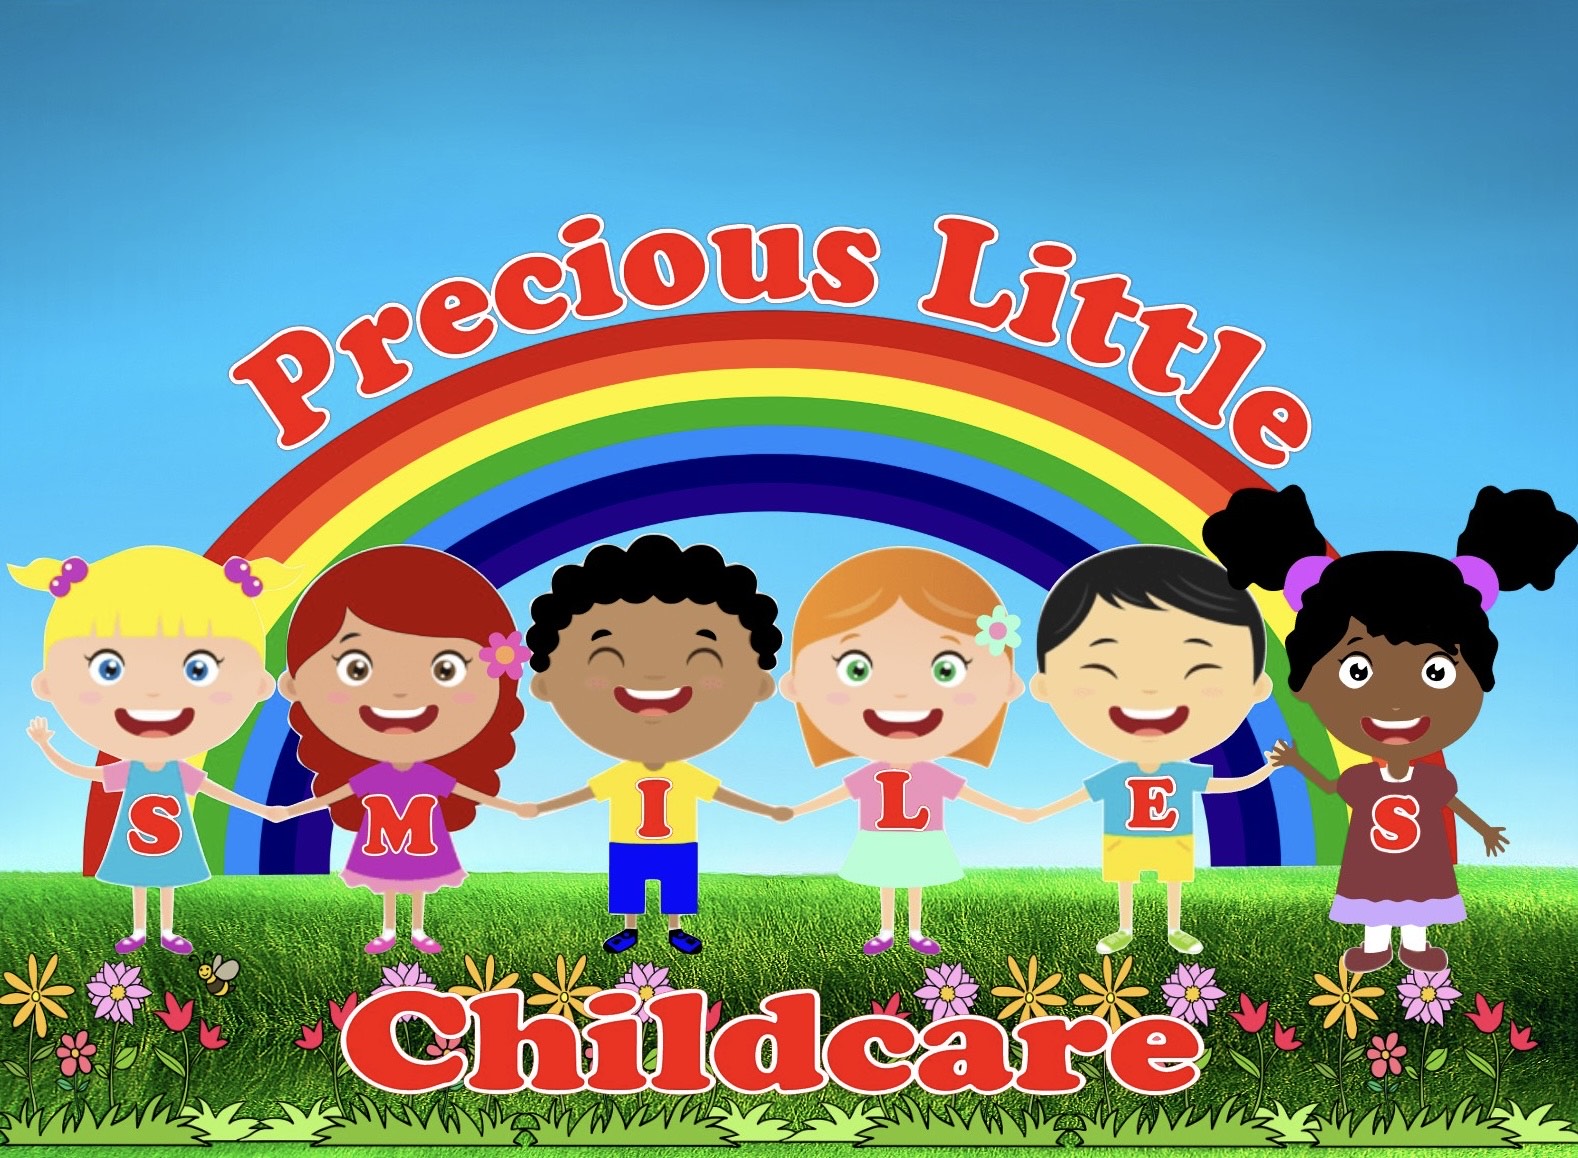 Precious Little Smiles In-Home Child Care